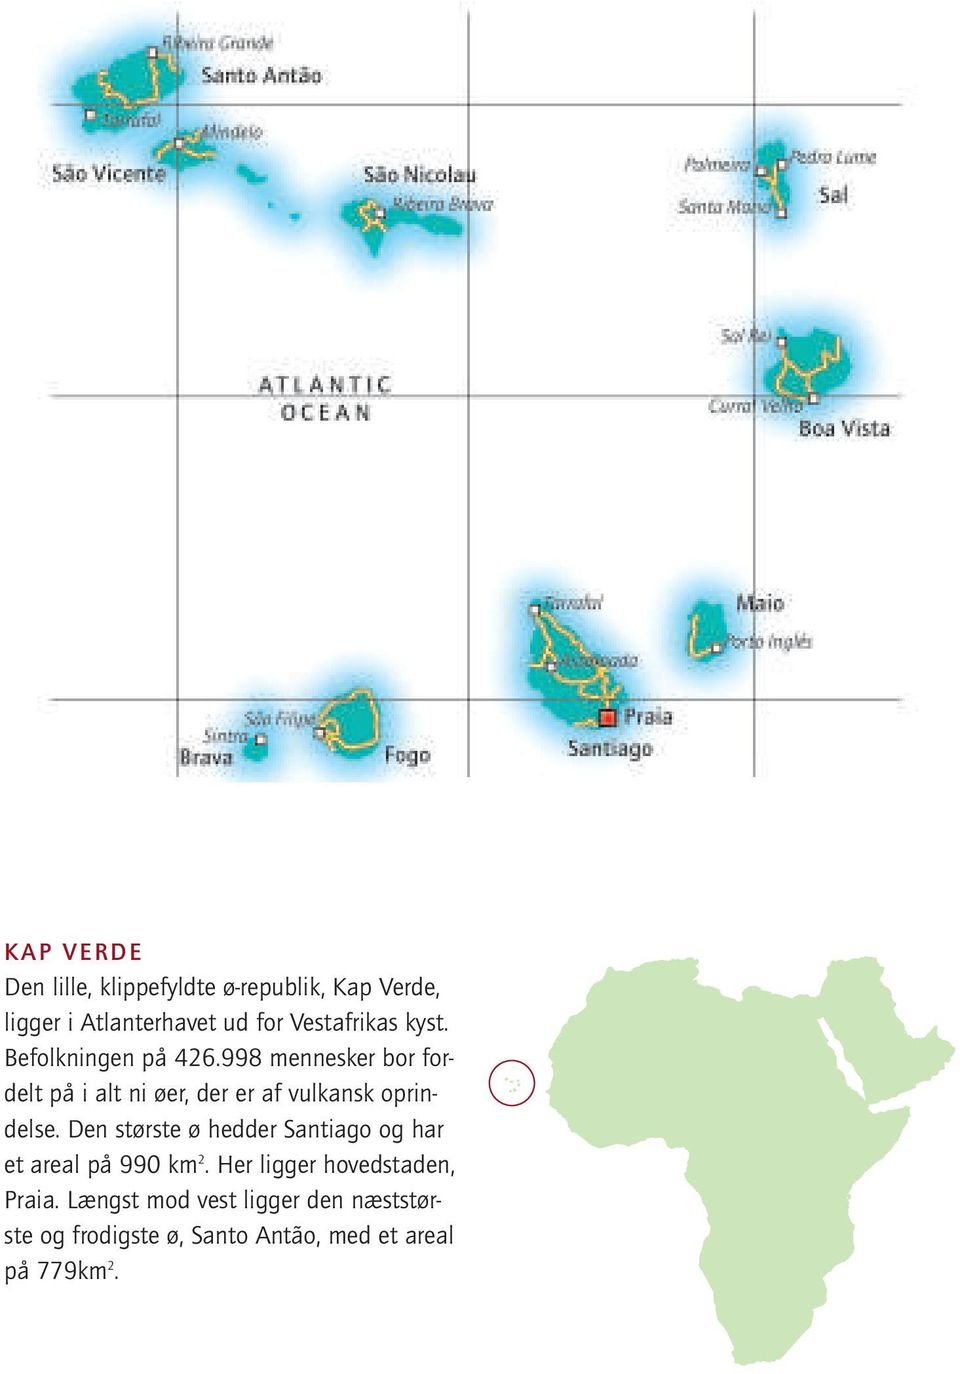 998 mennesker bor fordelt på i alt ni øer, der er af vulkansk oprindelse.